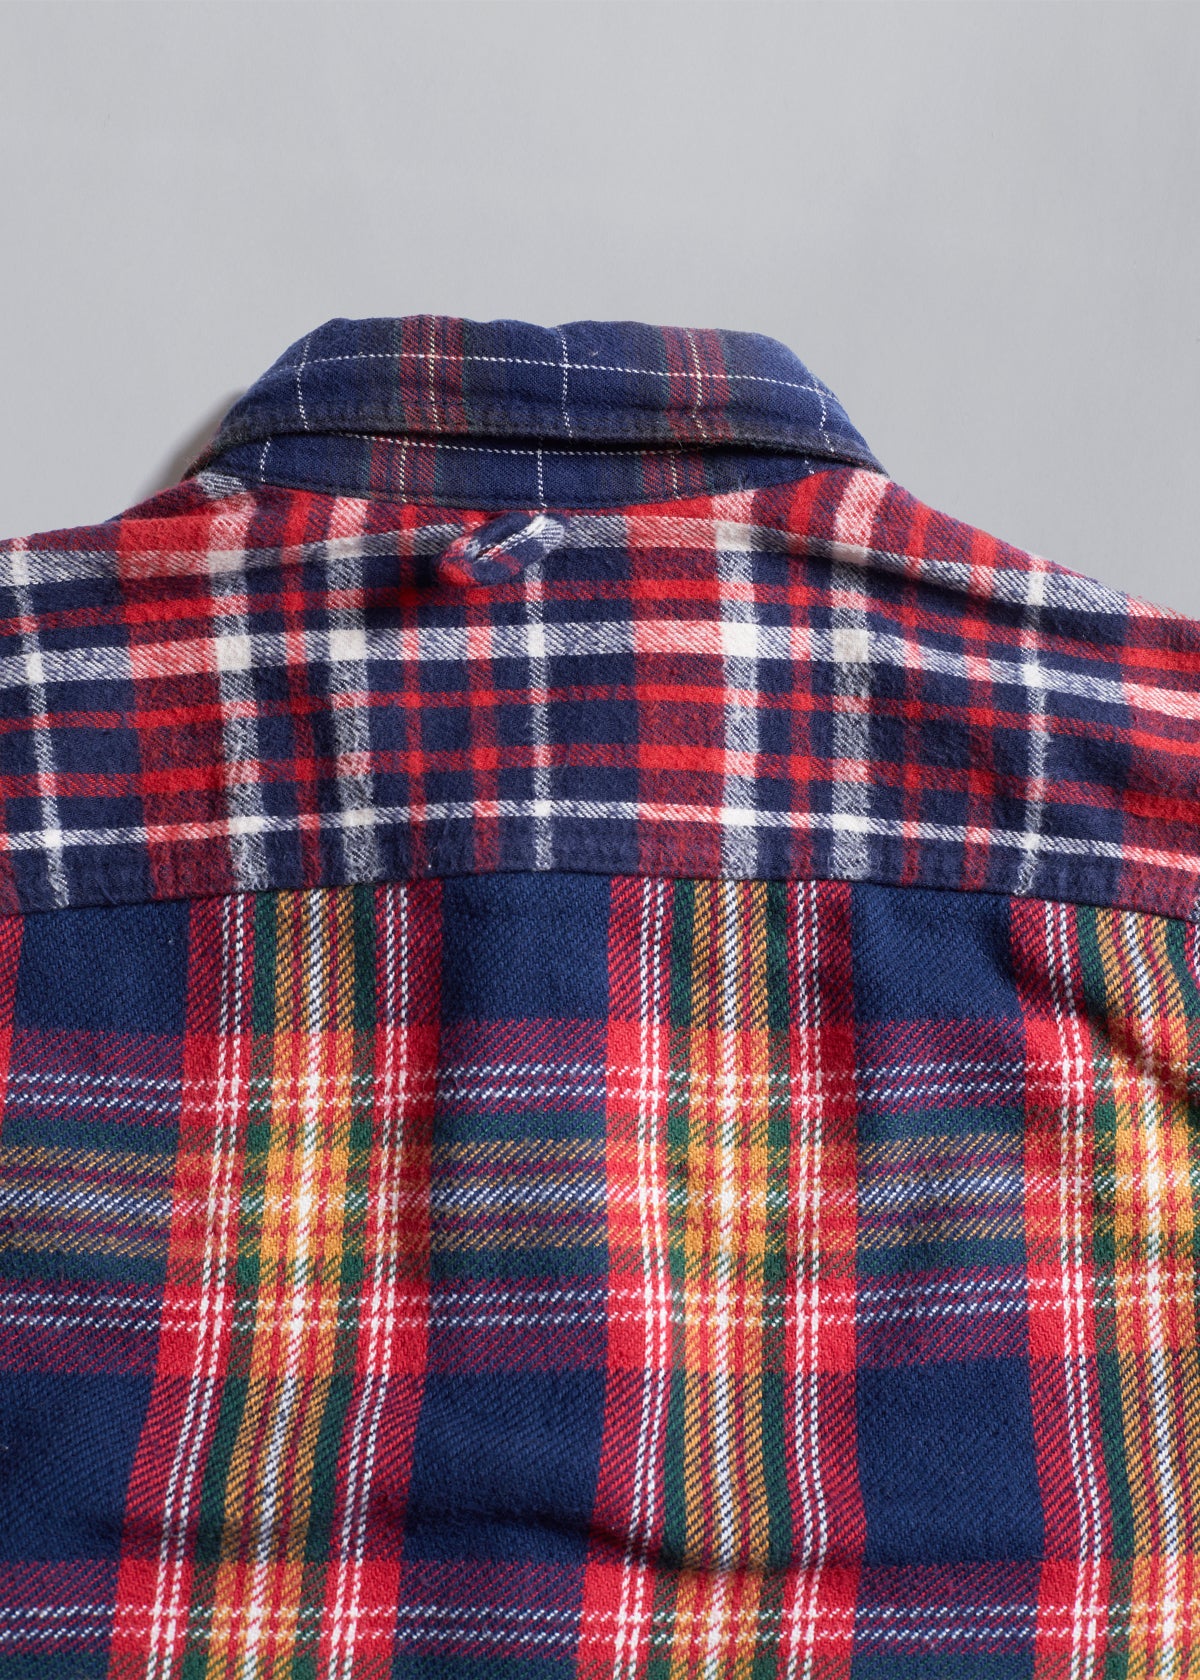 Tartan Patchwork Flannel Shirt AW2011 - Small